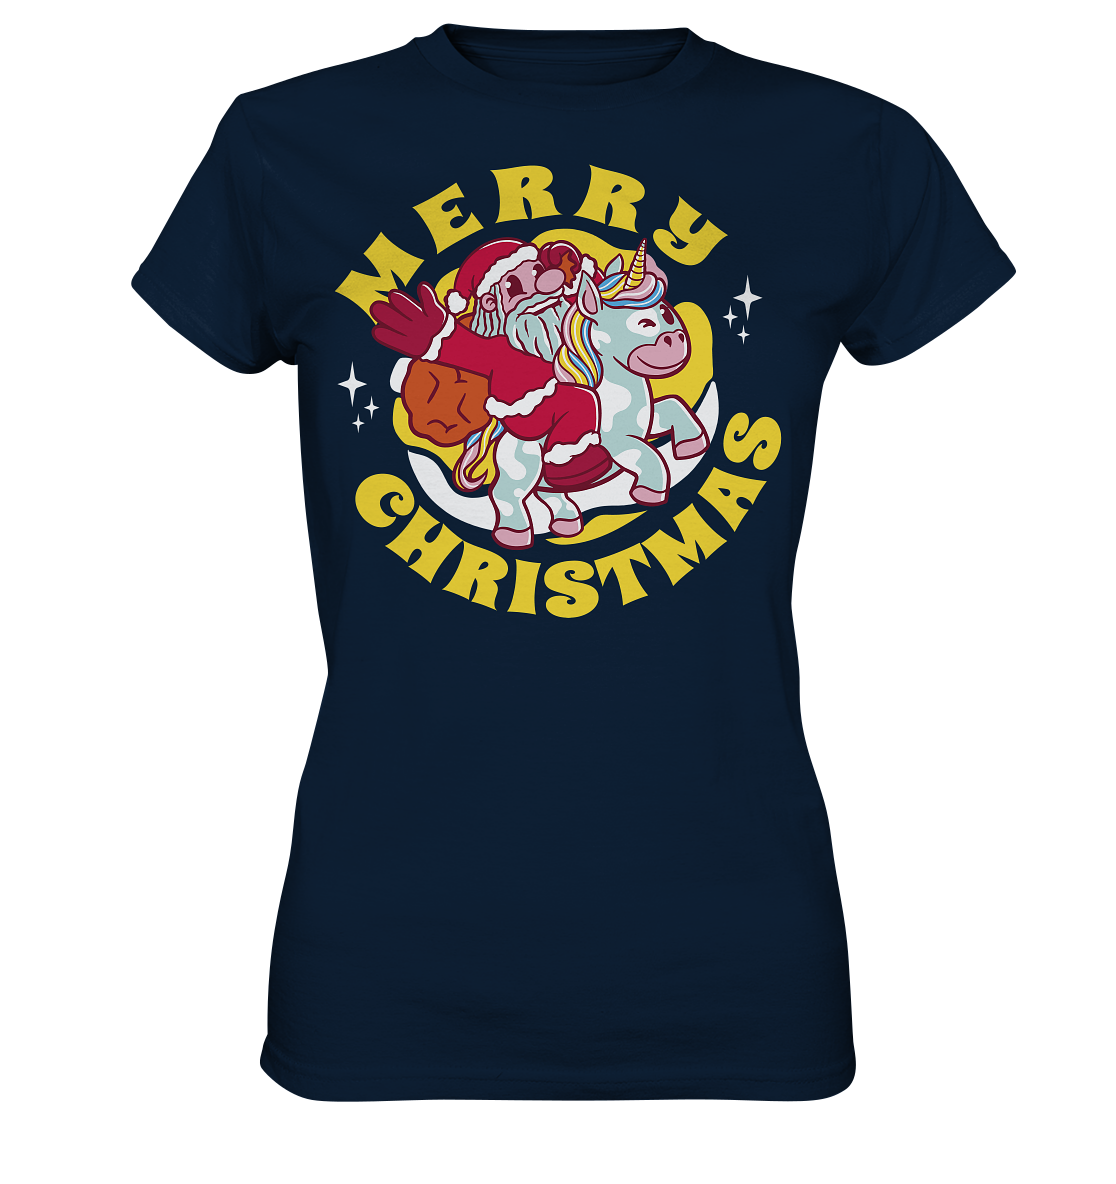 Reitender Nikolaus,Merry Christmas, Frohe Weihnachten  - Ladies Premium Shirt